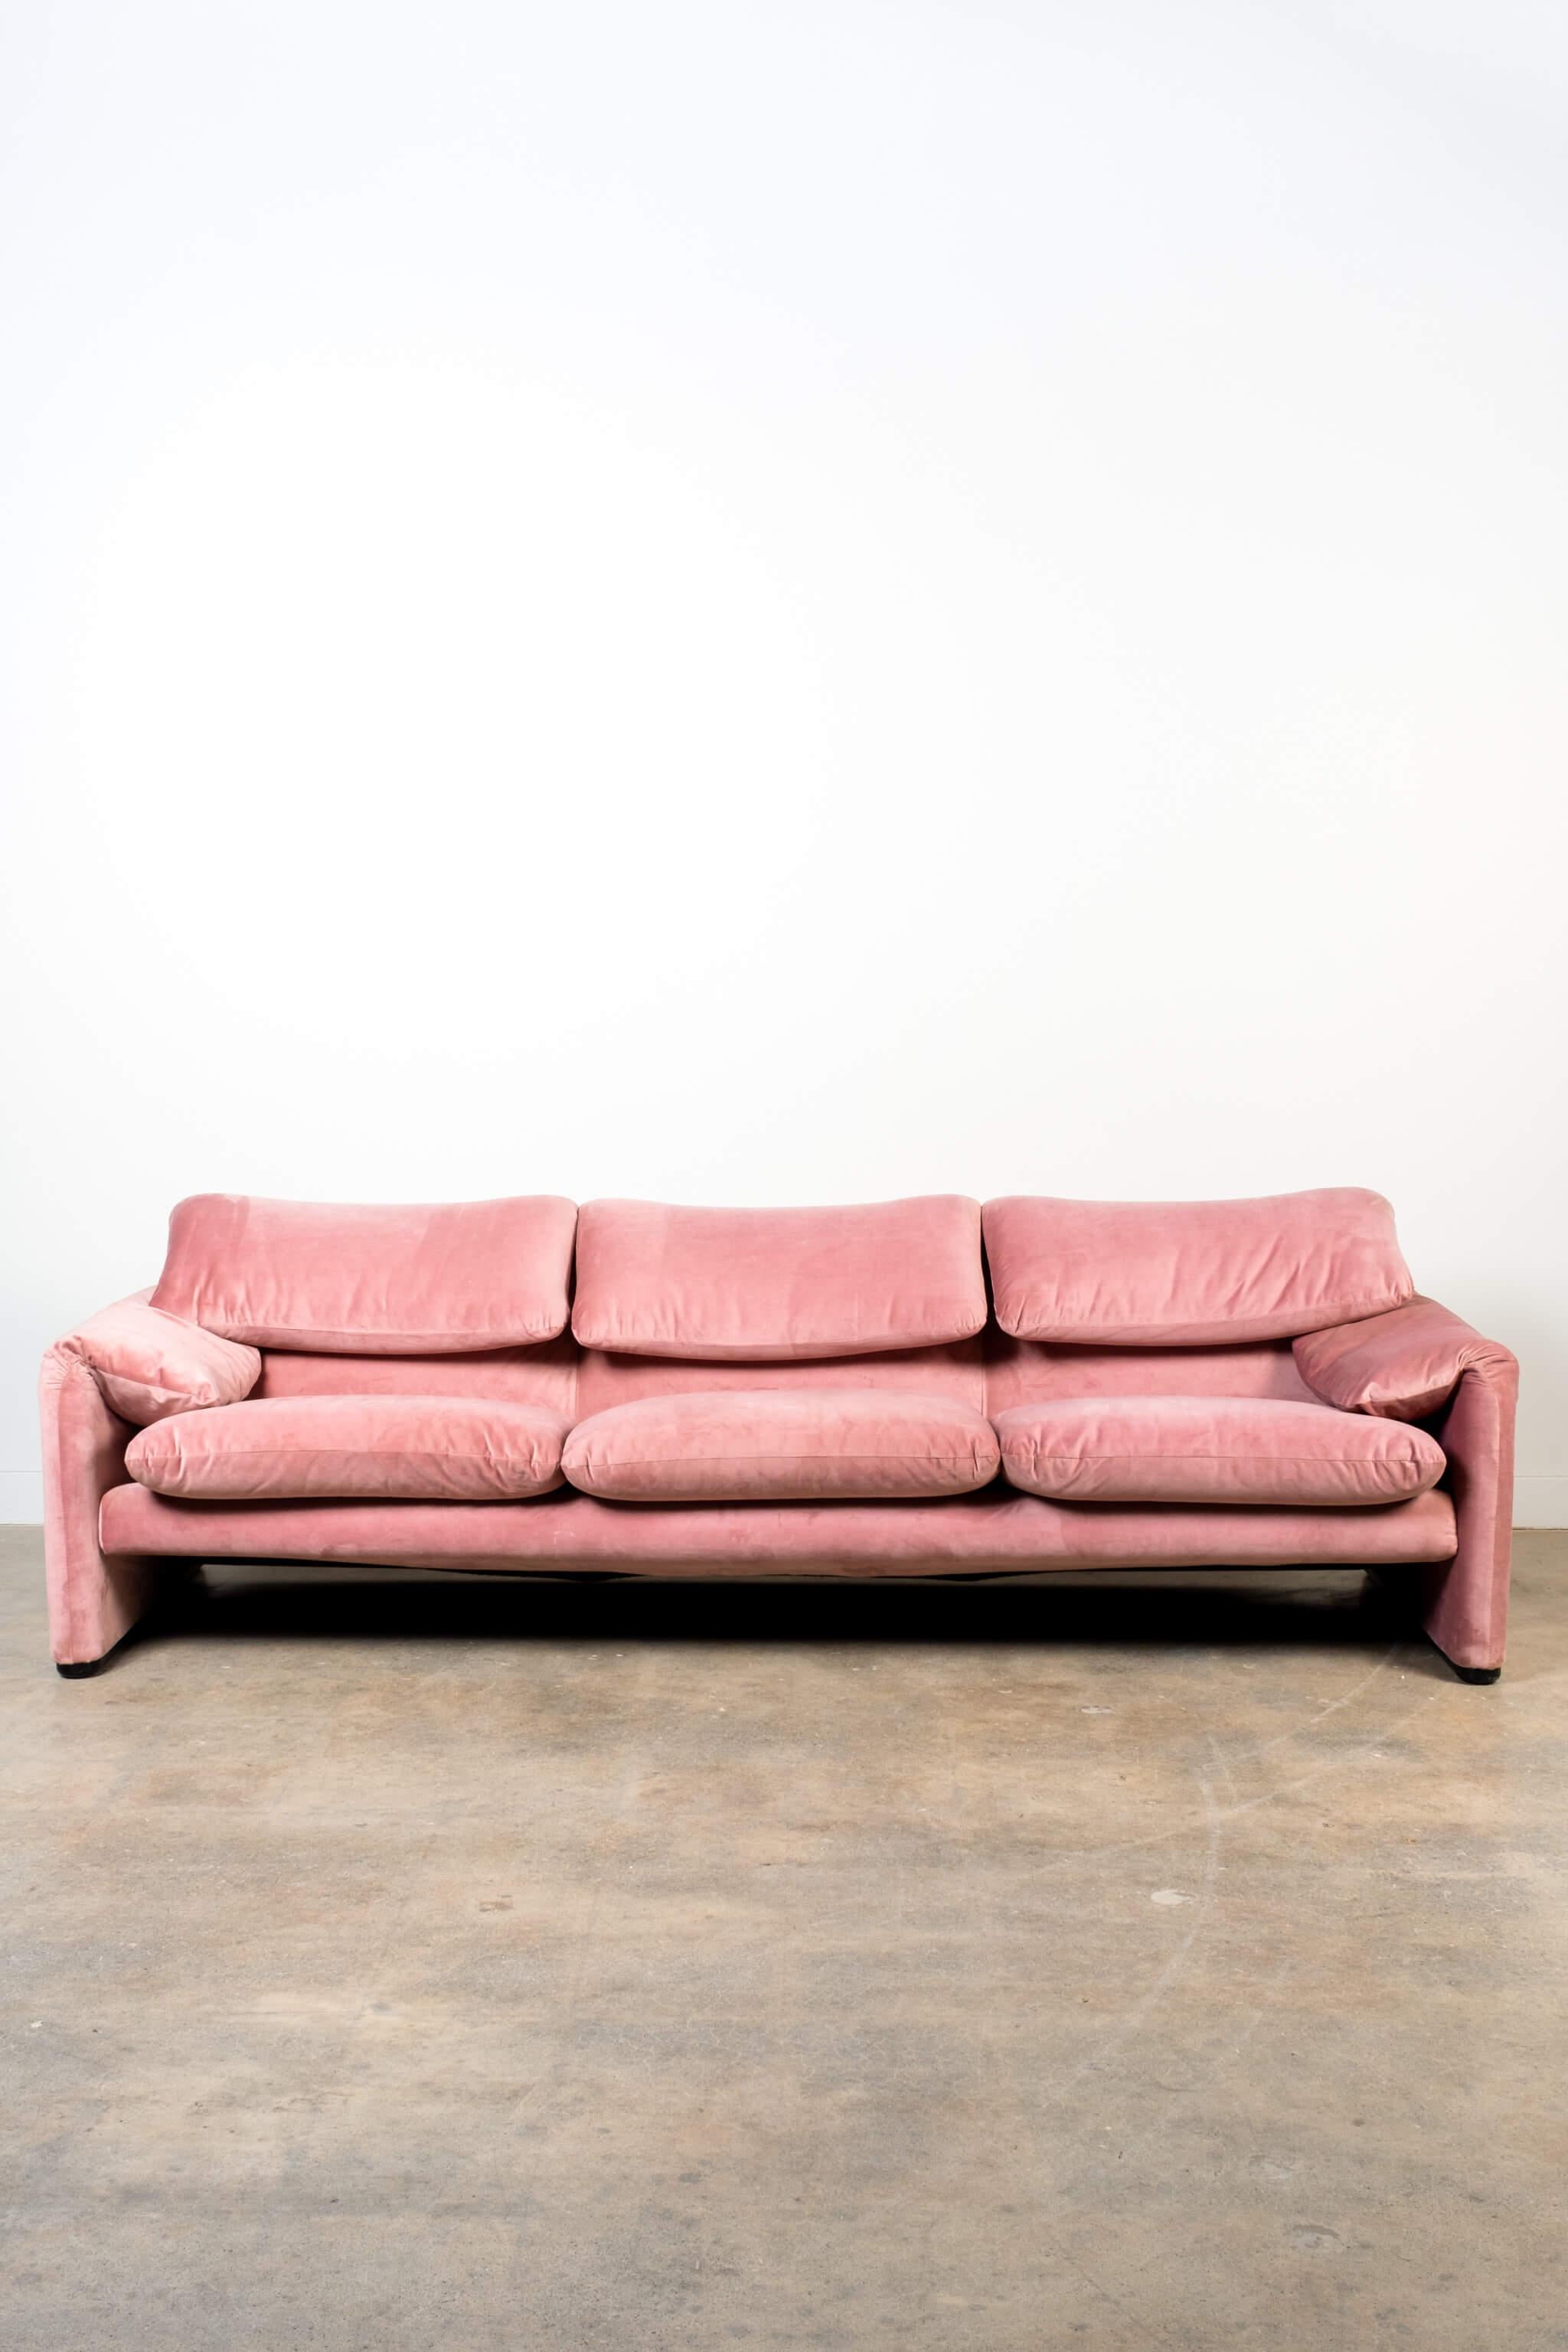 Post-Modern Maralunga 3-Seater Sofa, Newly Reupholstered in Pink Velvet